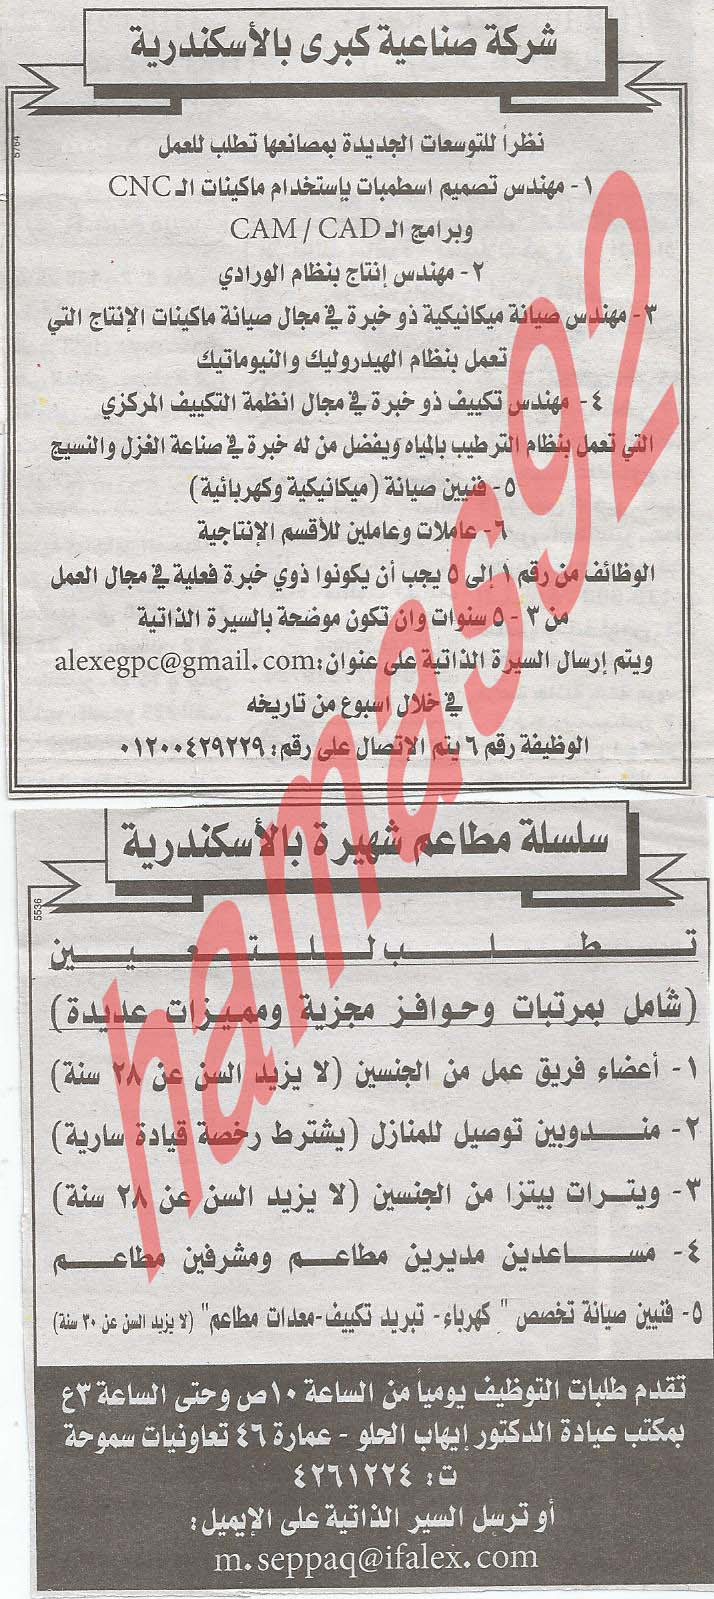 وظائف خالية فى جريدة الوسيط الاسكندرية الجمعة 10-05-2013 %D9%88+%D8%B3+%D8%B3+2